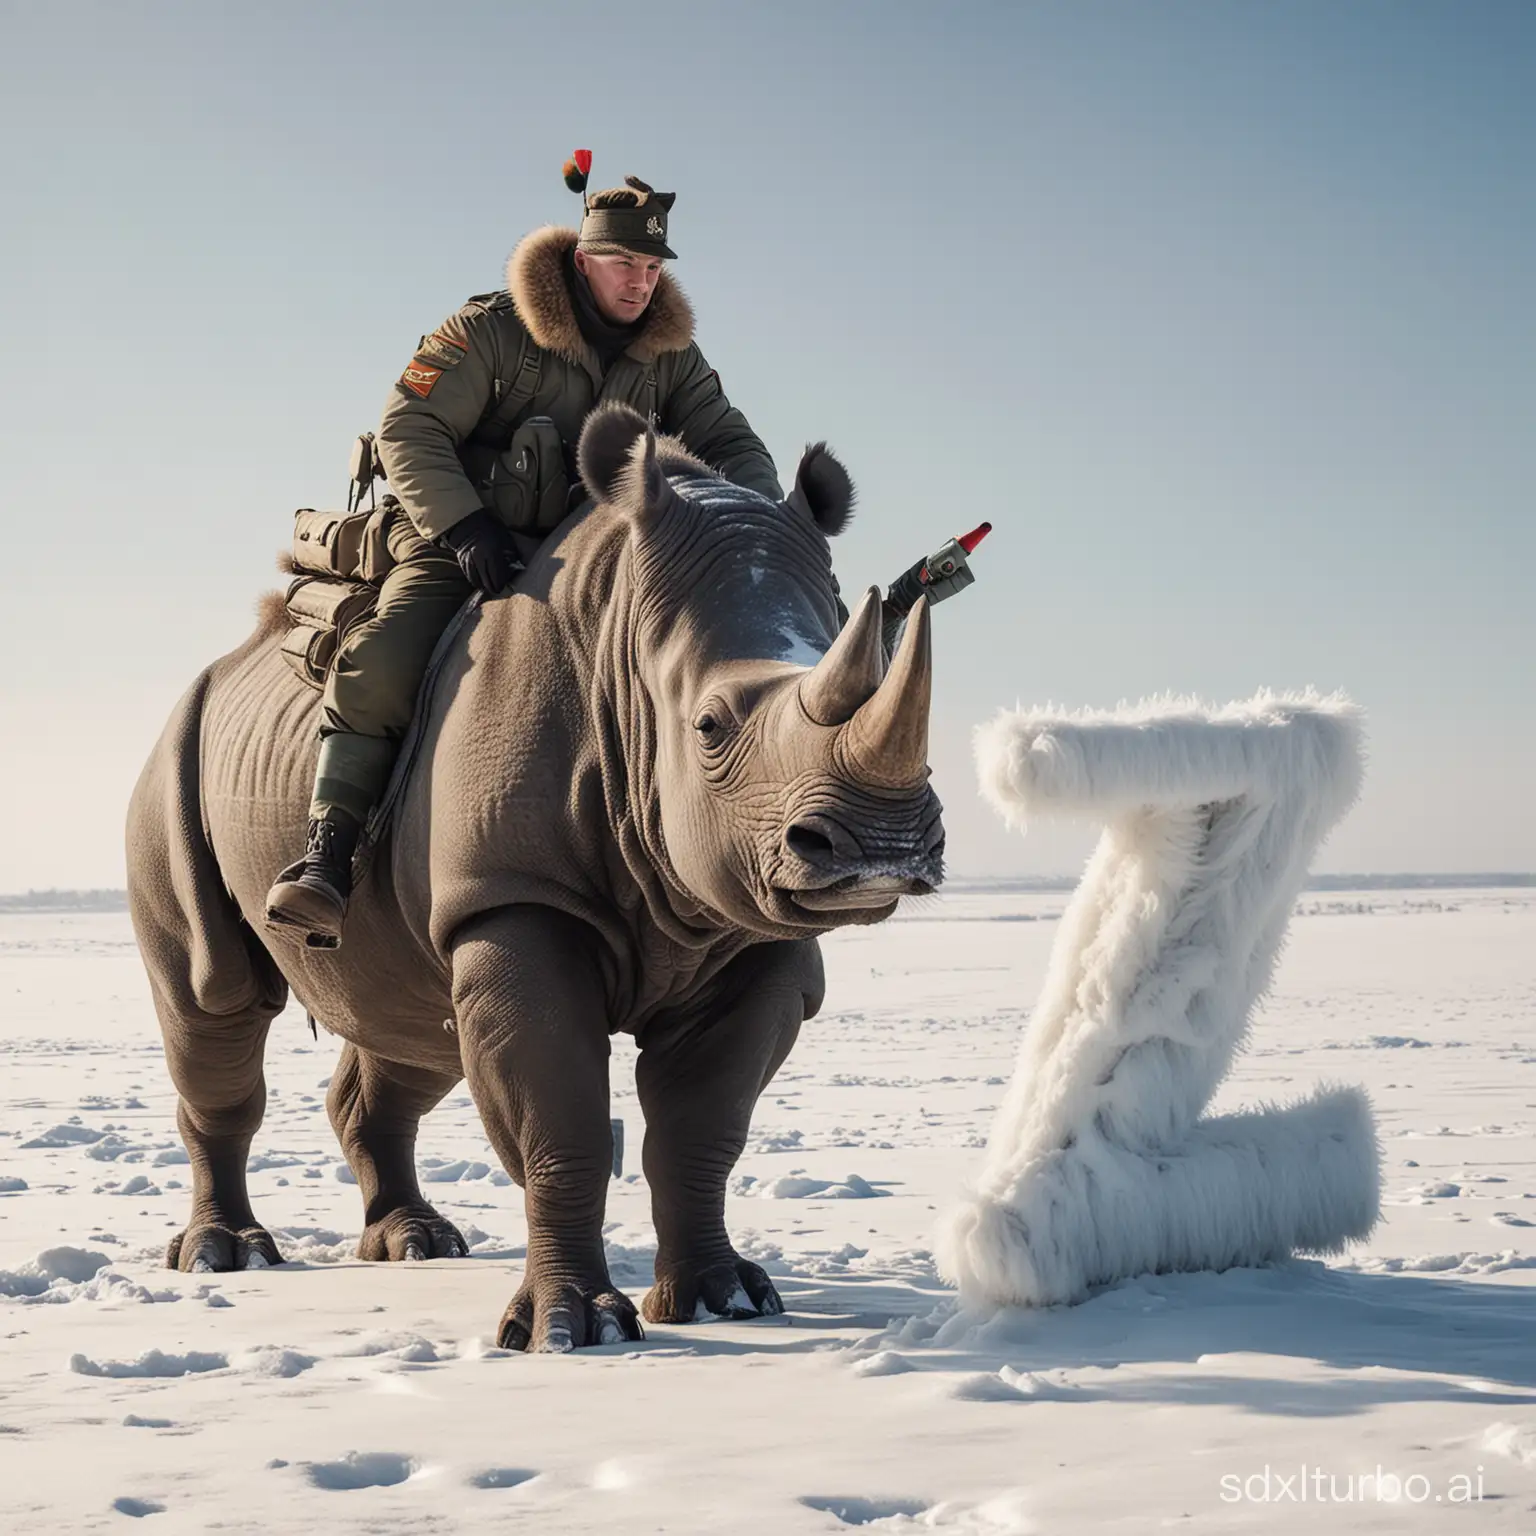 русский человек в военной форме  на мохнатом носороге с буквой Z на боку . Всё это происходит в суровой зиме рядом в воздухе дрон 
